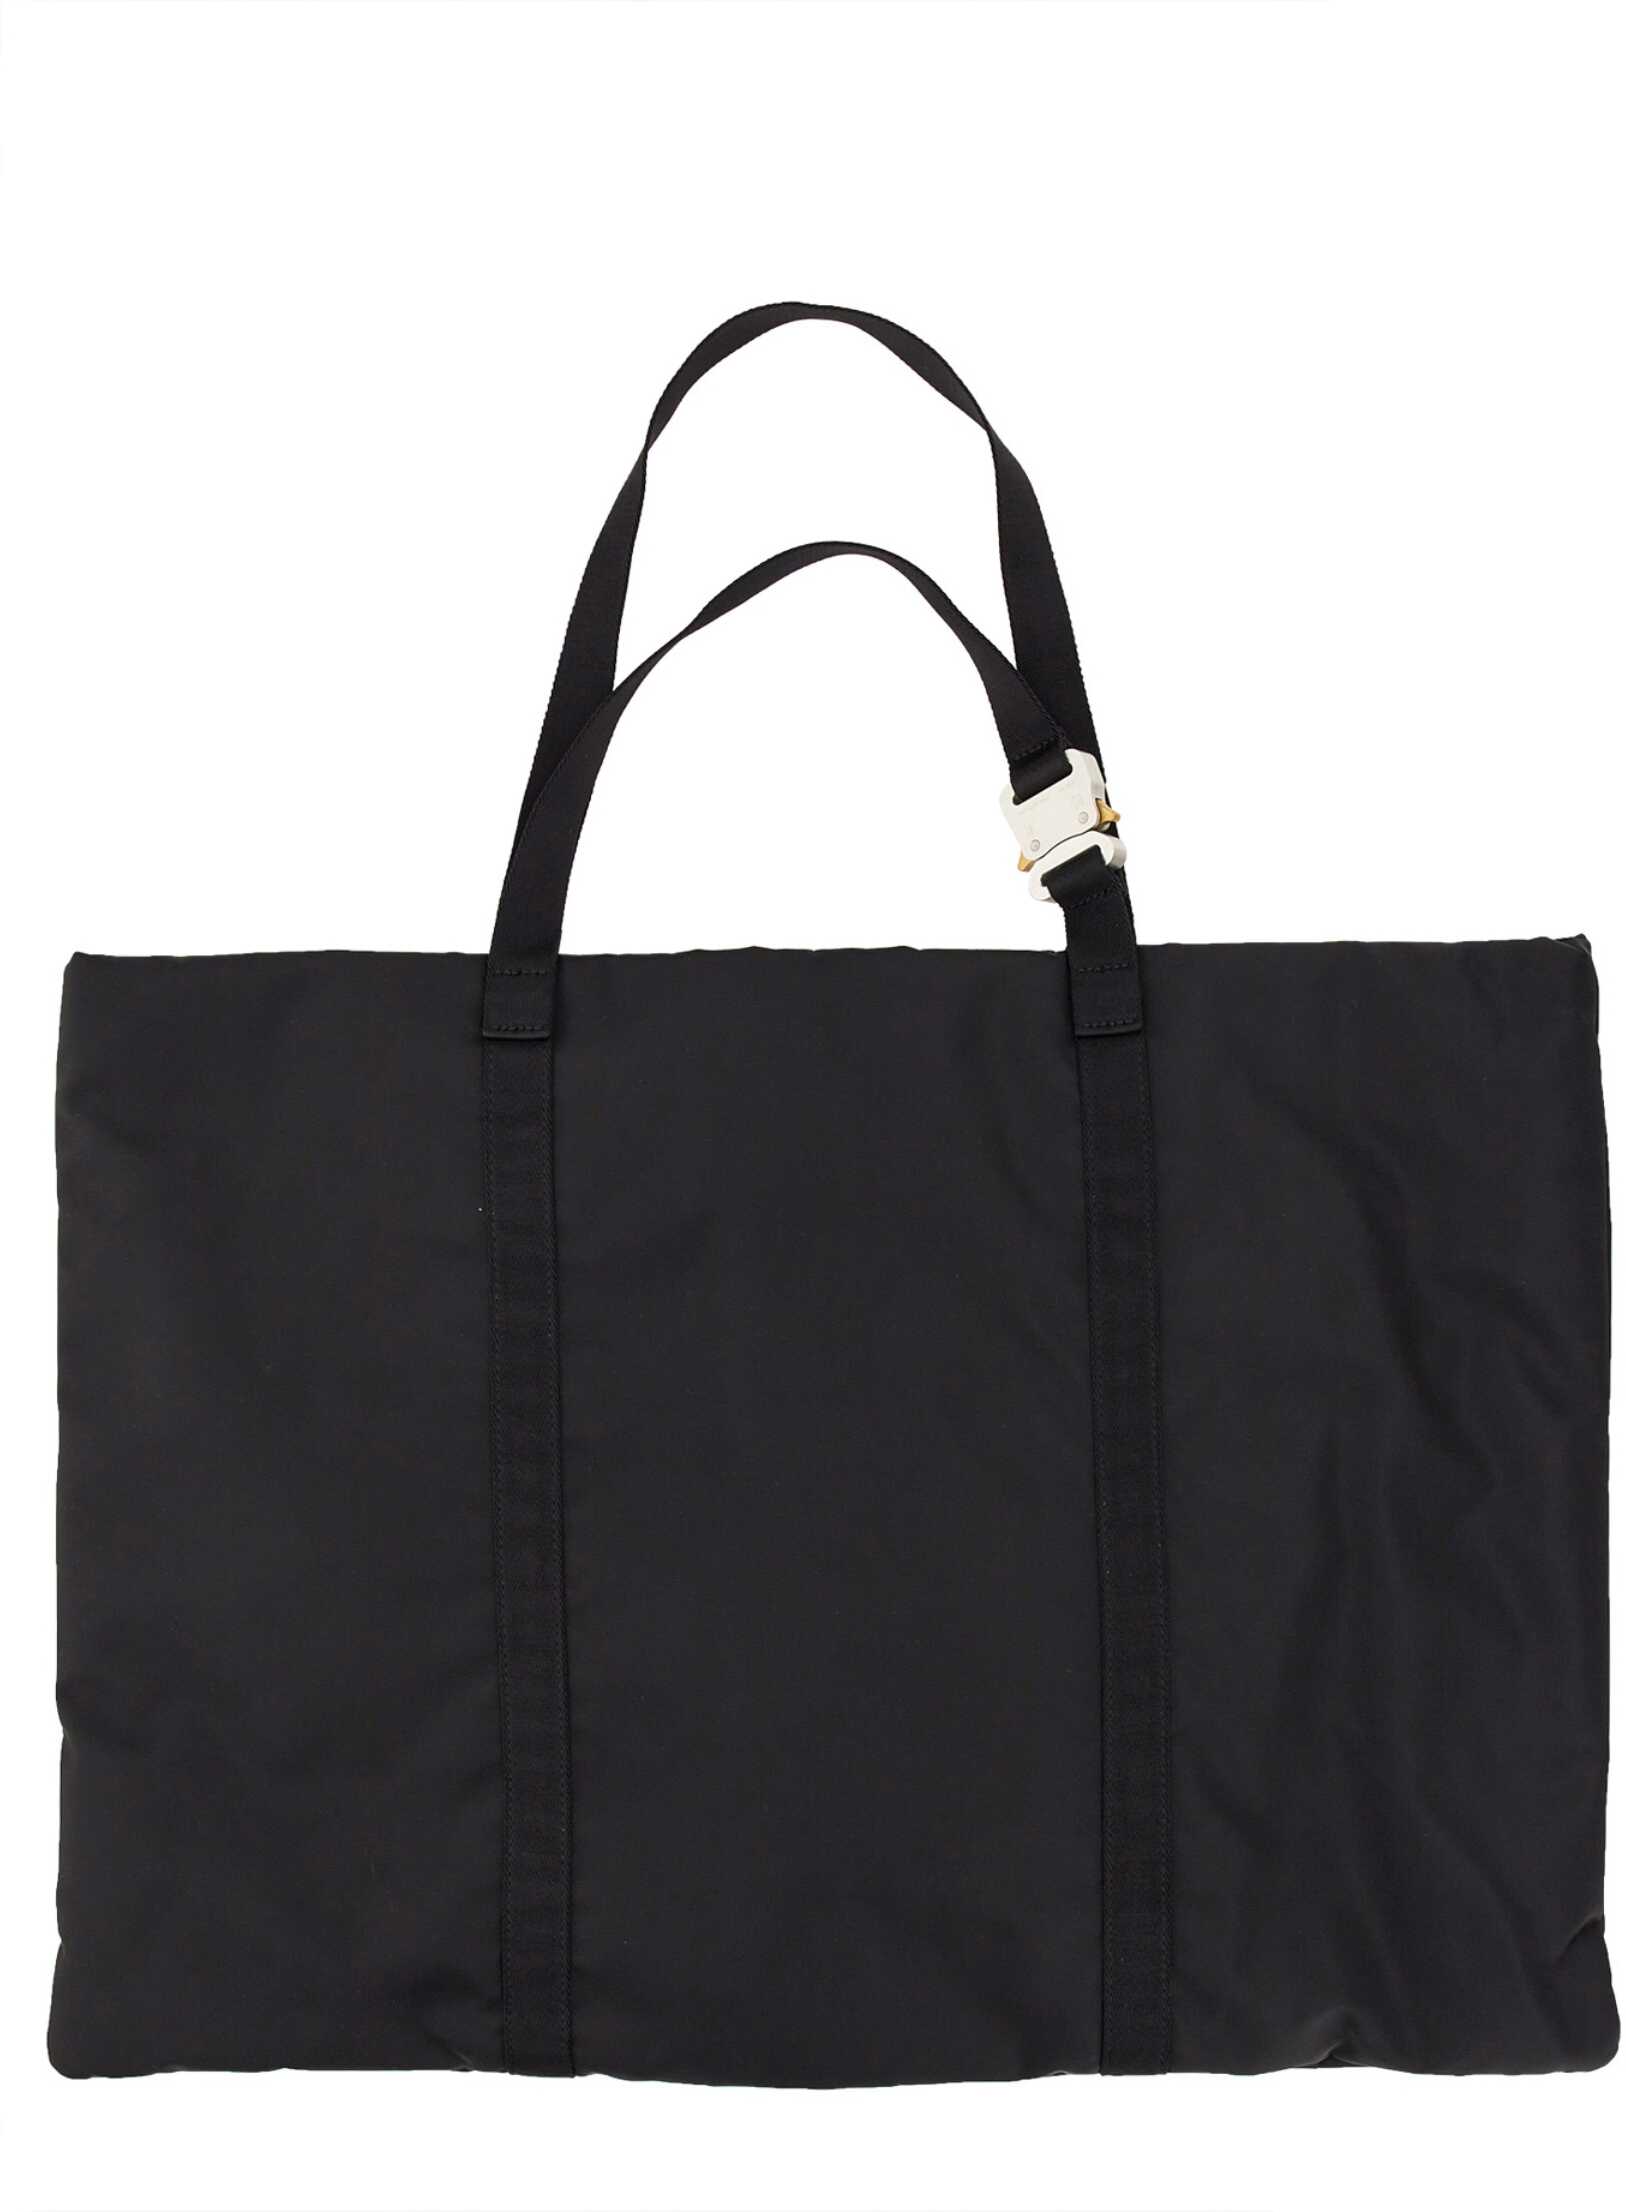 1017 ALYX 9SM Bag With Logo BLACK